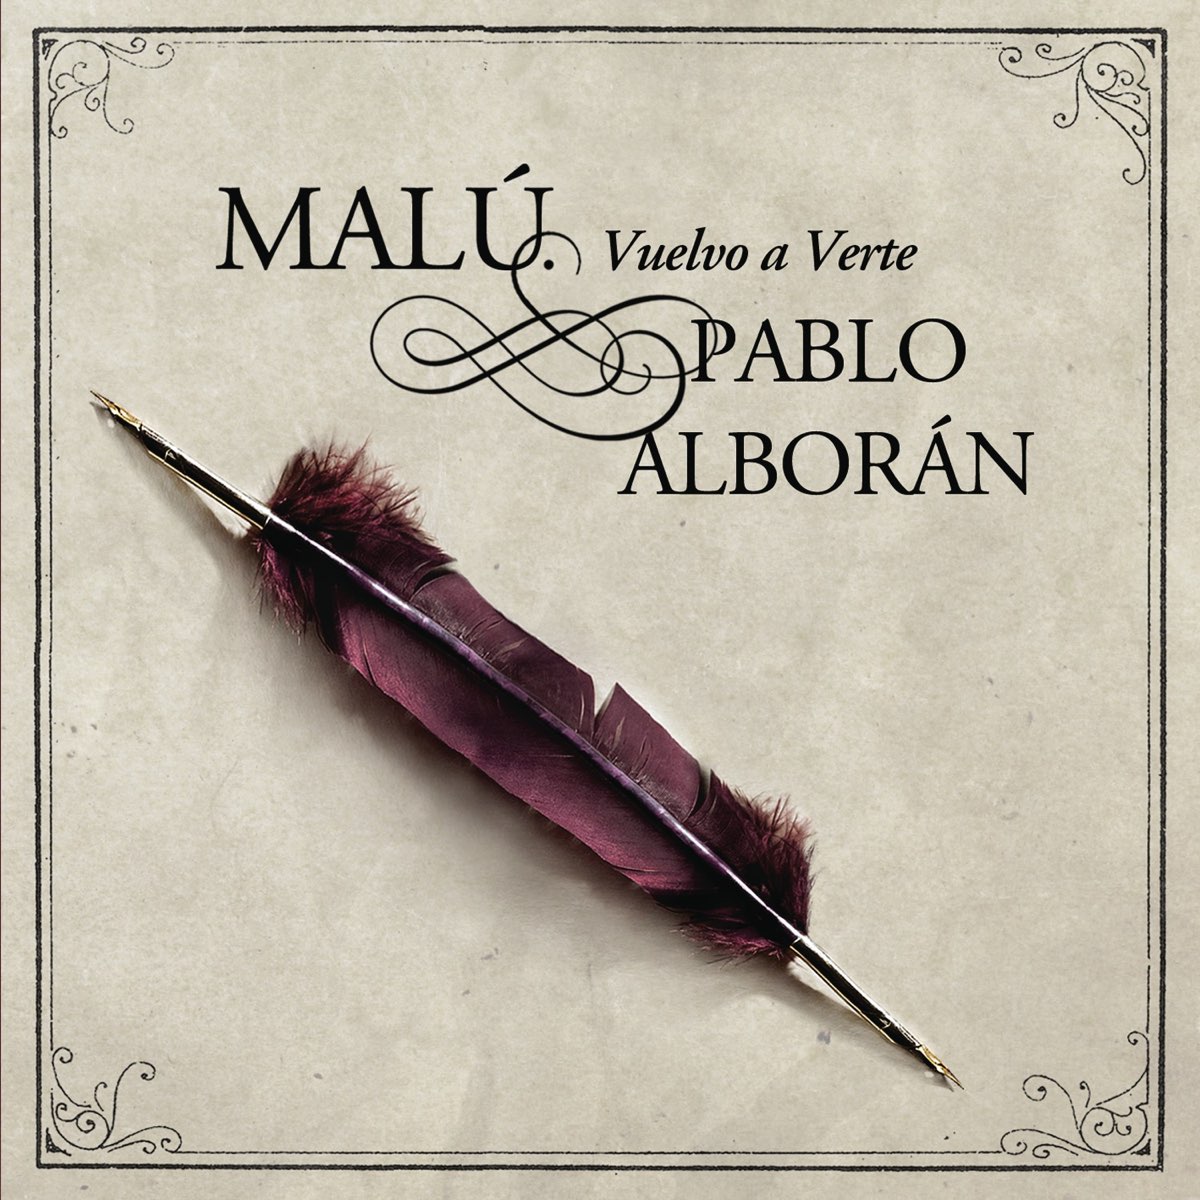 Malú & Pablo Alborán — Vuelvo a Verte cover artwork